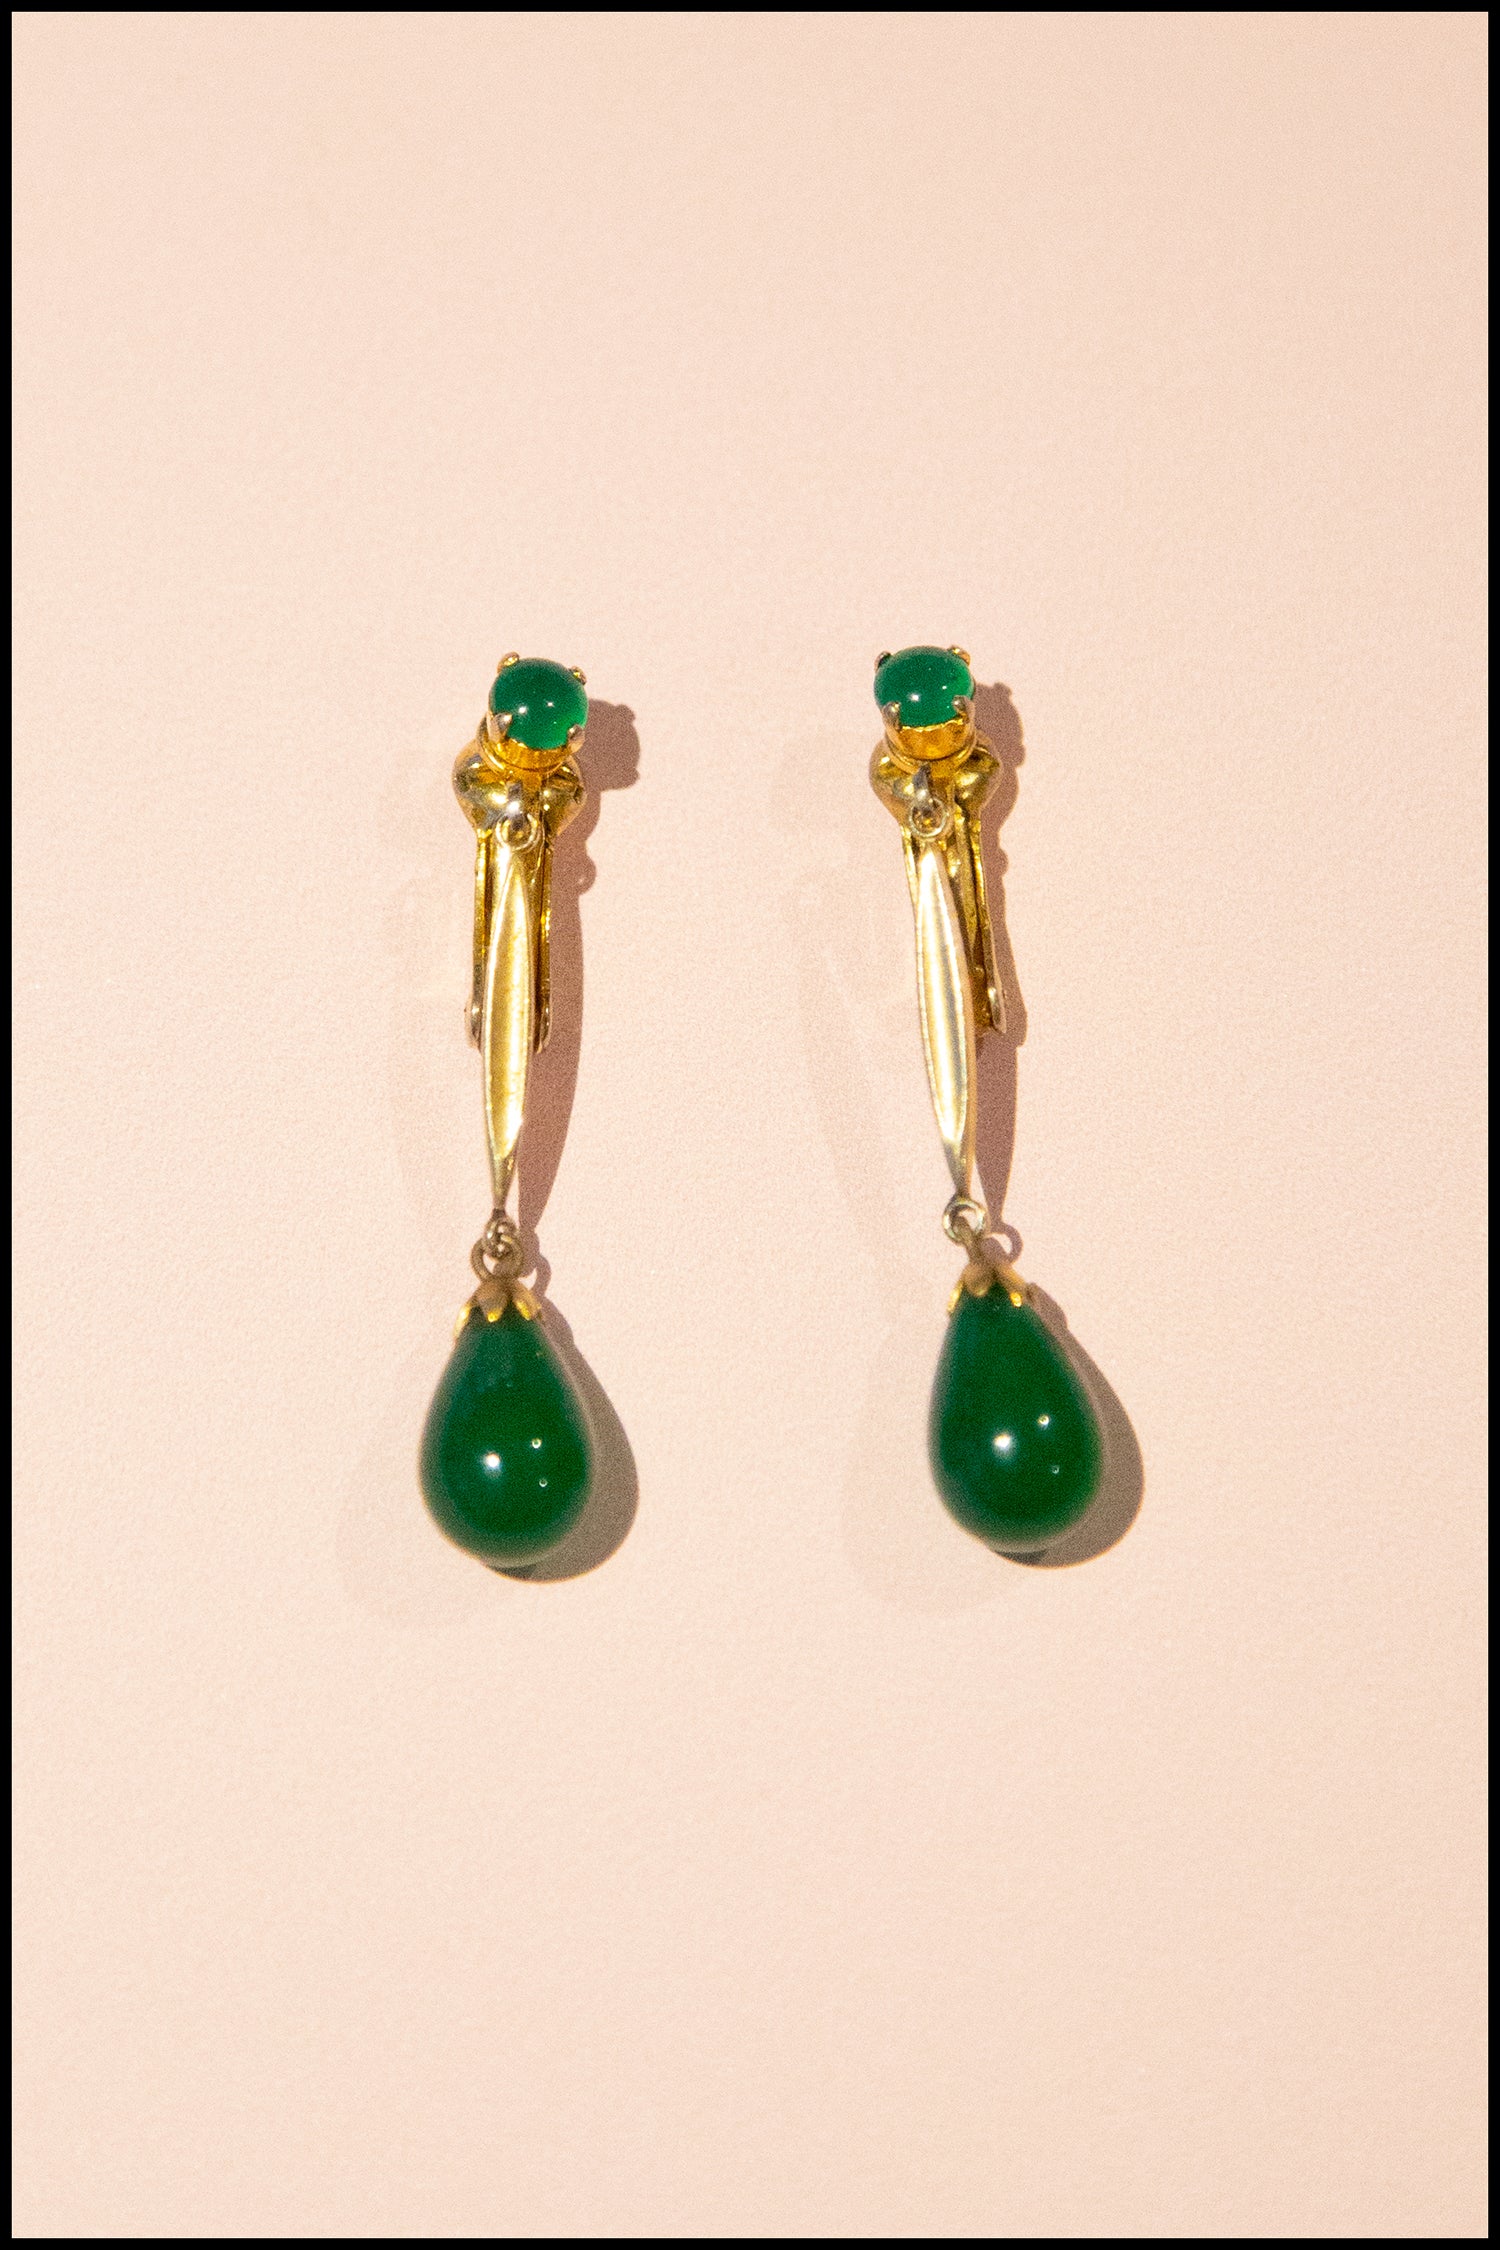 Vintage 1950s Green Glass Drop Earrings